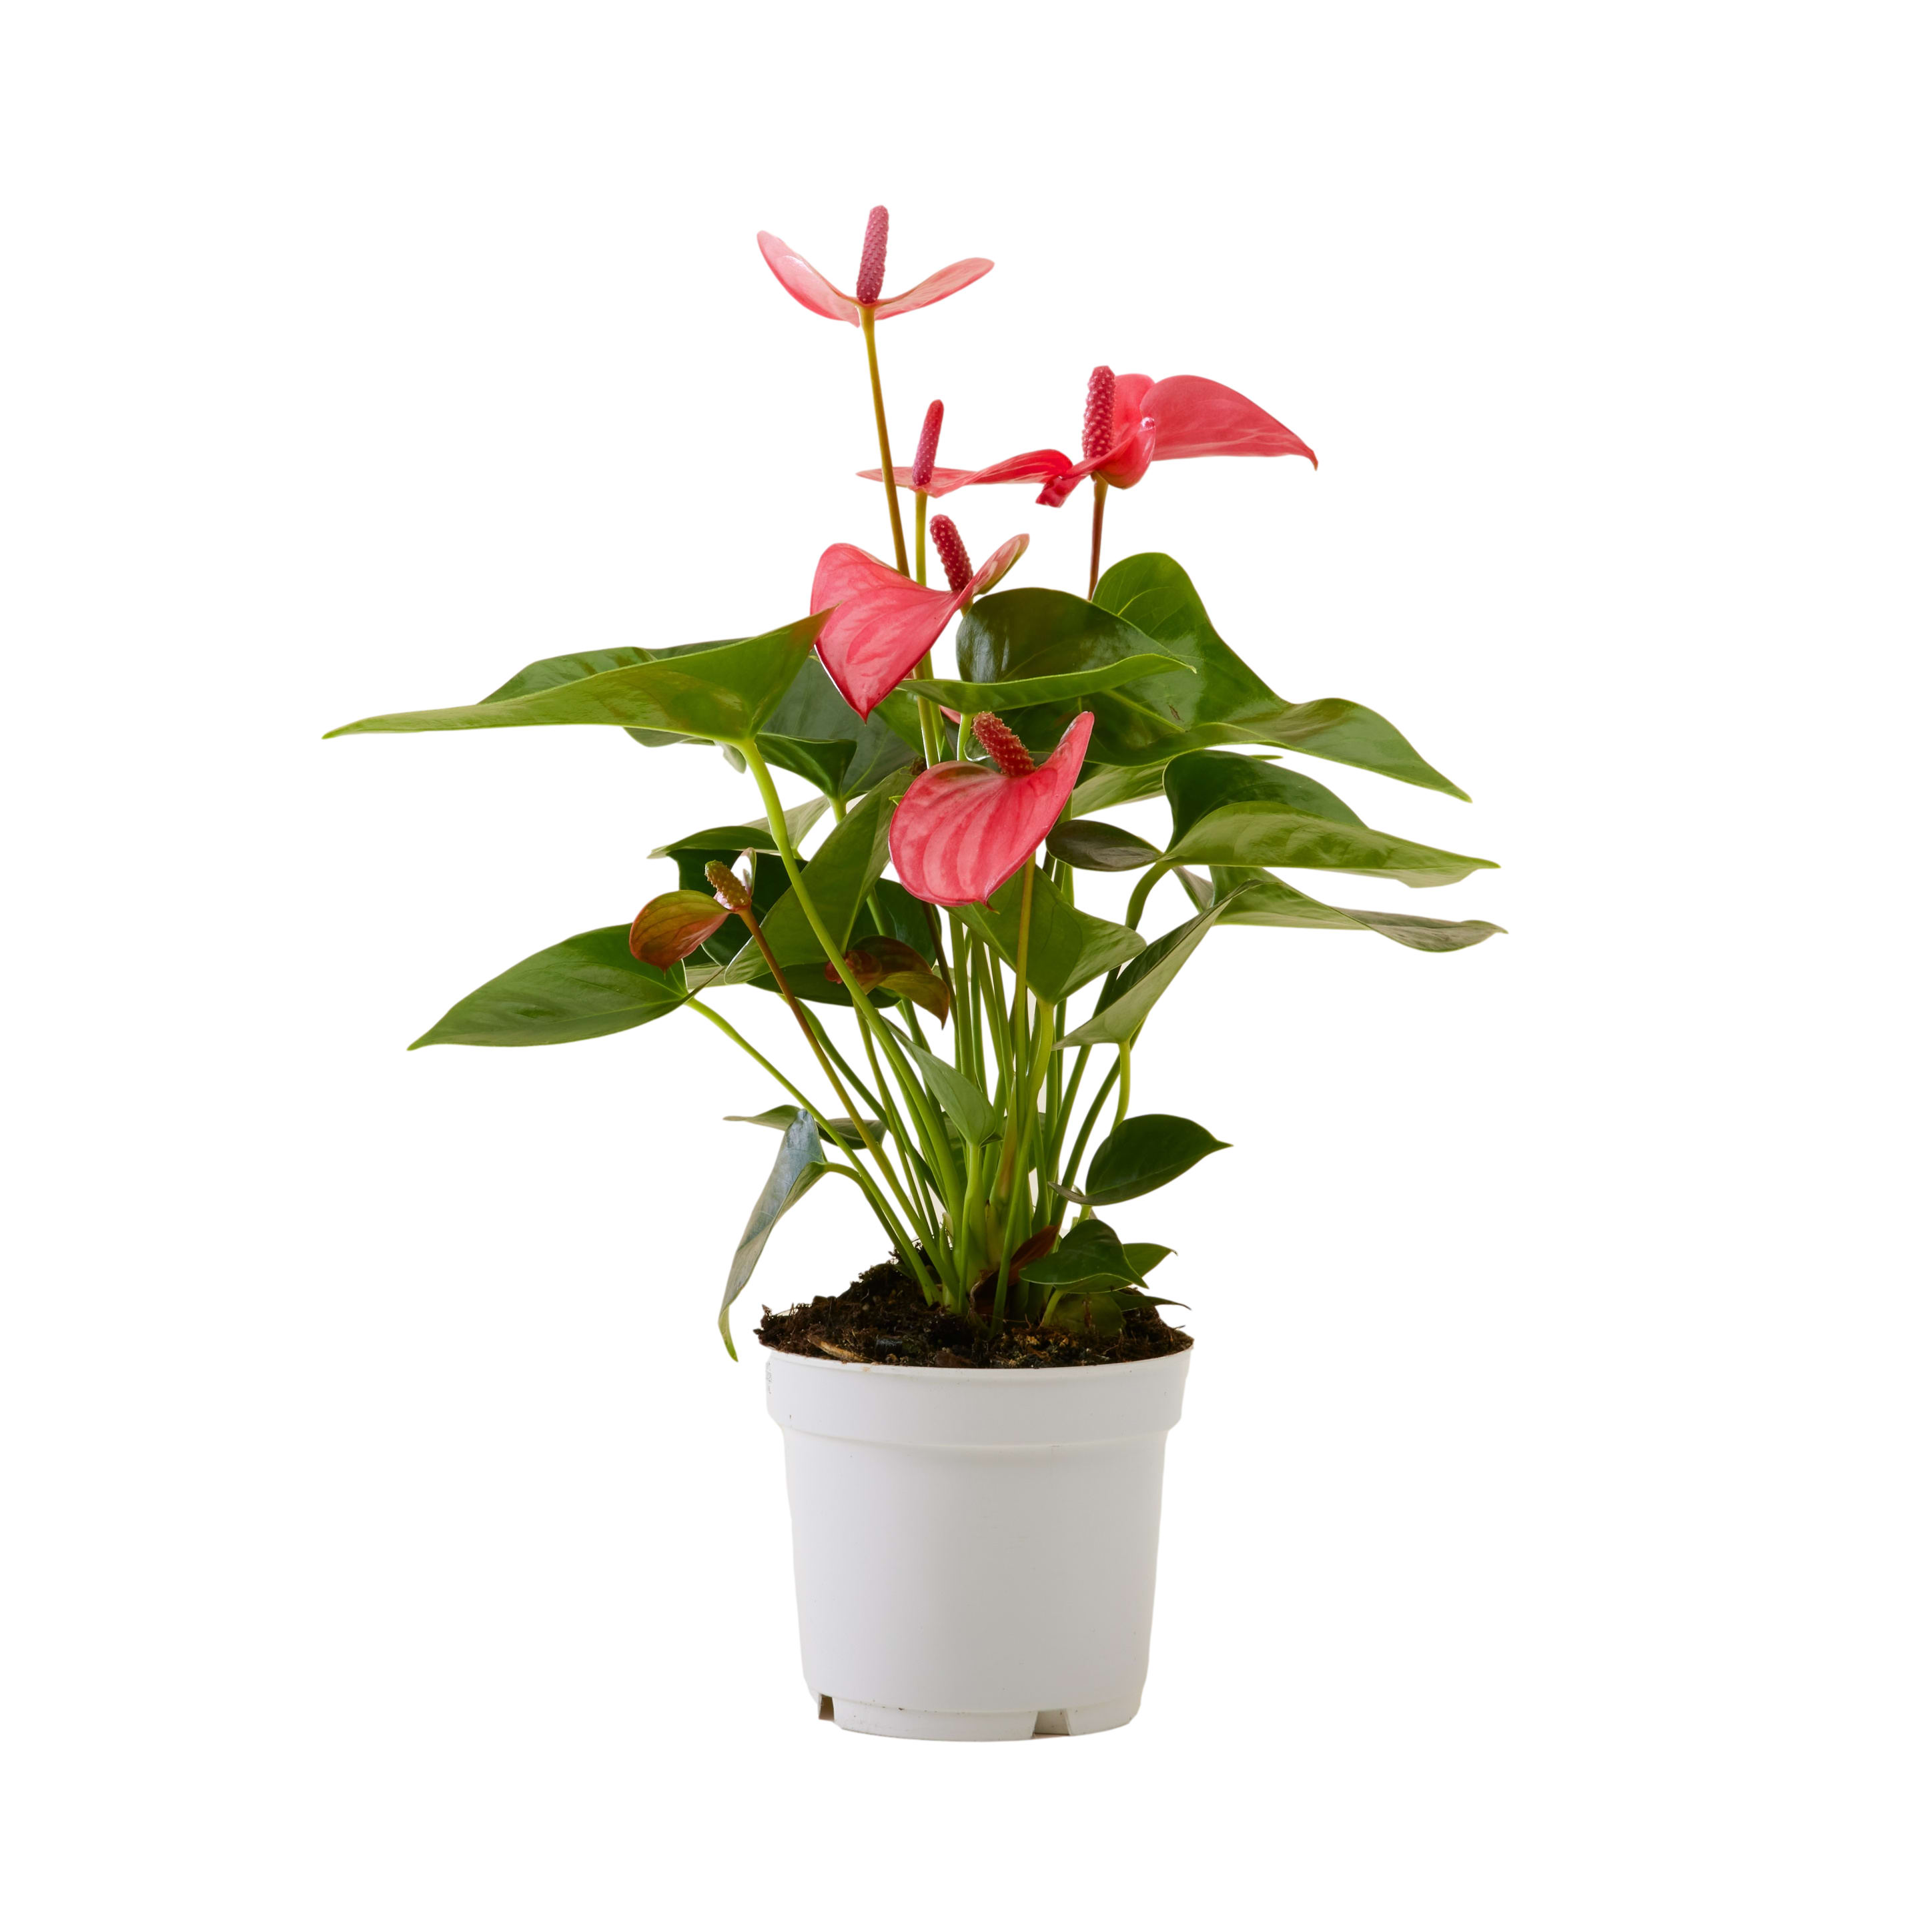 Plante d'intérieur - Anthurium pink champion